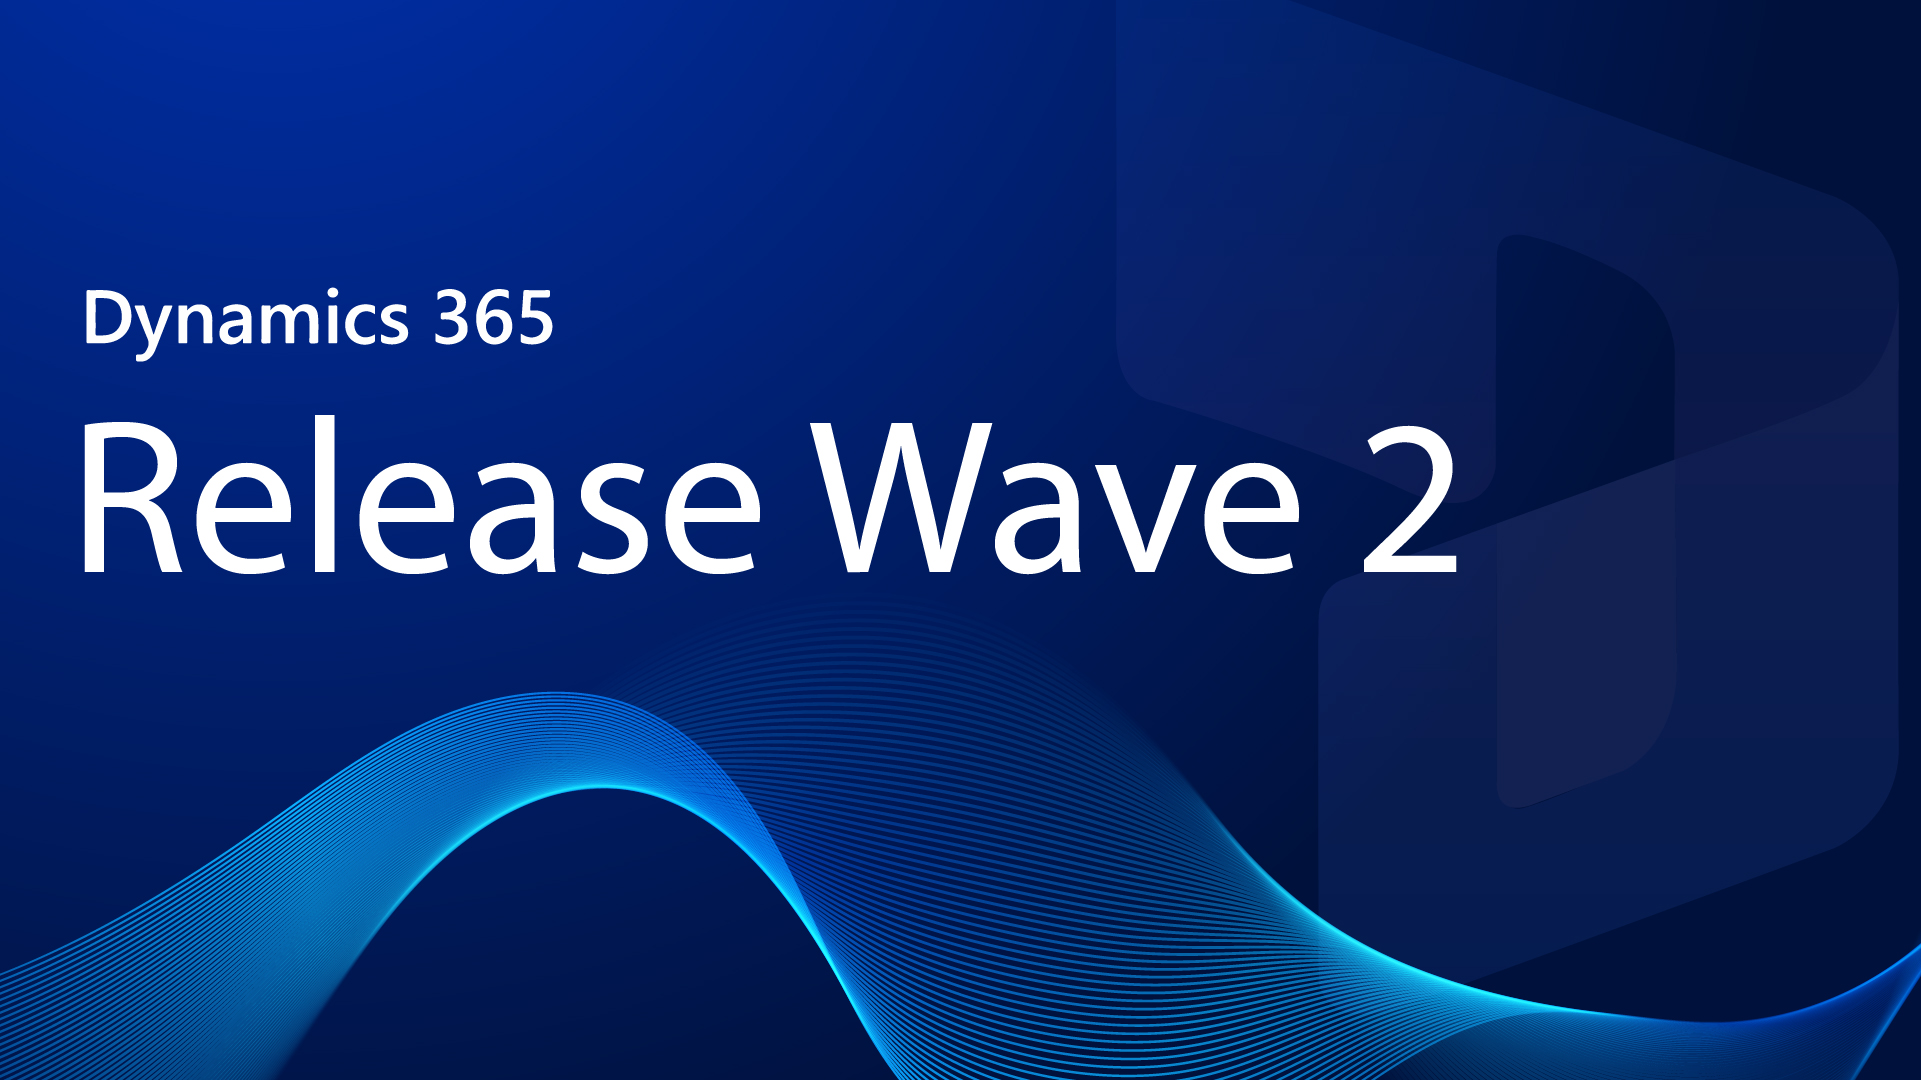 Die Dynamics 365 Release Wave 2